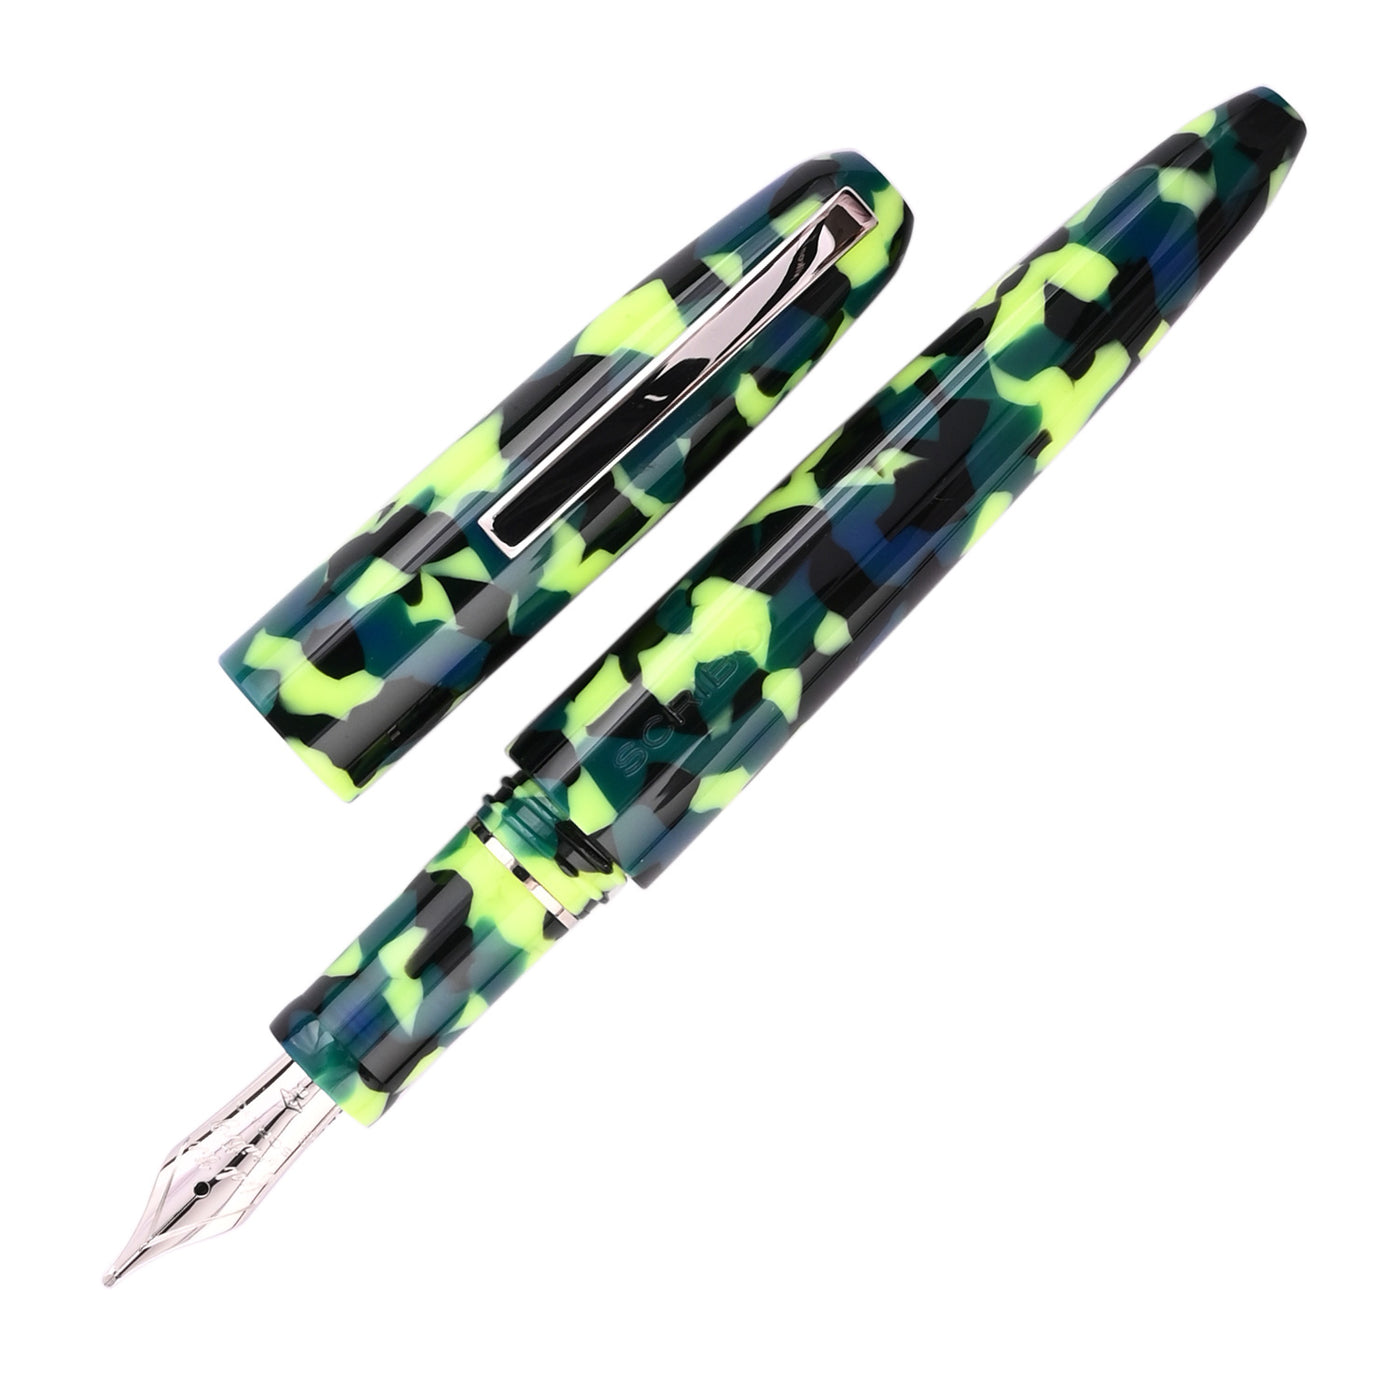 Scribo Piuma Fountain Pen - Popart (Limited Edition)